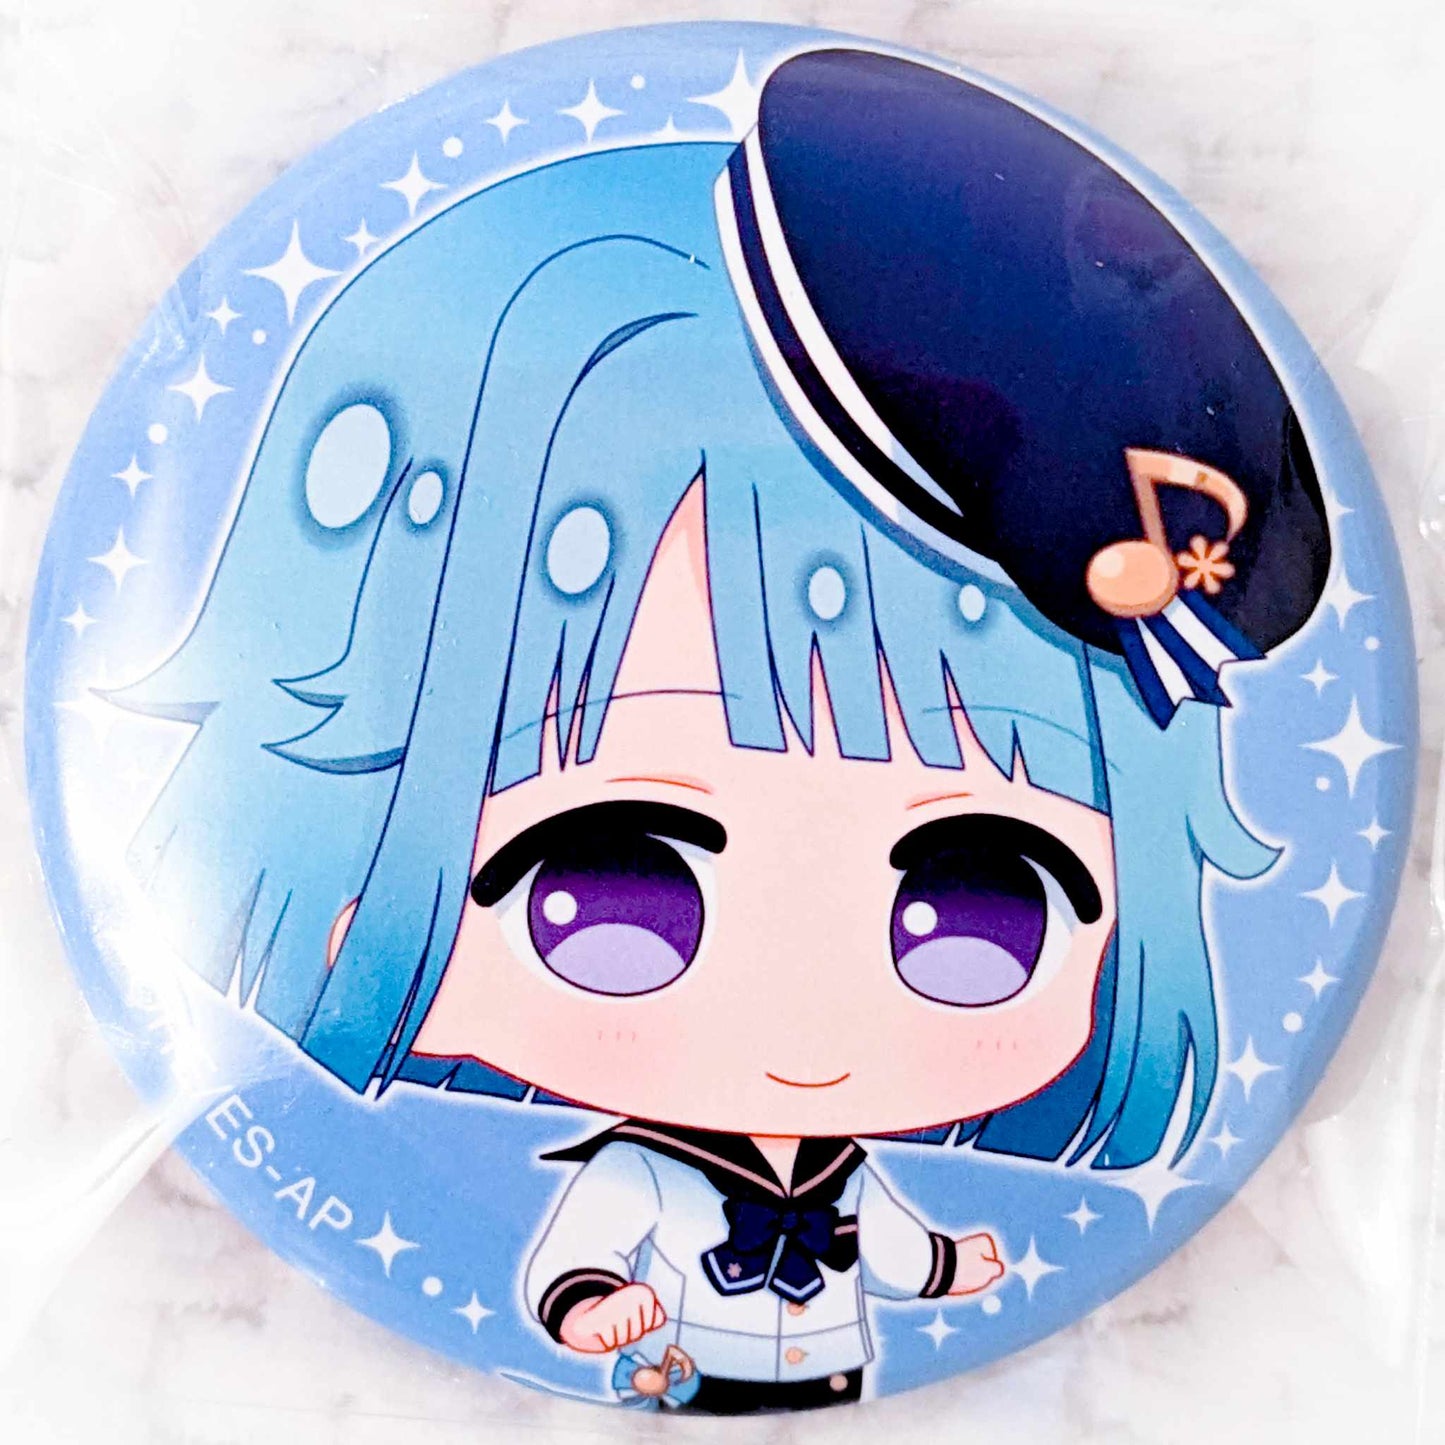 Hajime Shino - Ensemble Stars! Ra*bits Anime Chibi Pin Badge Button